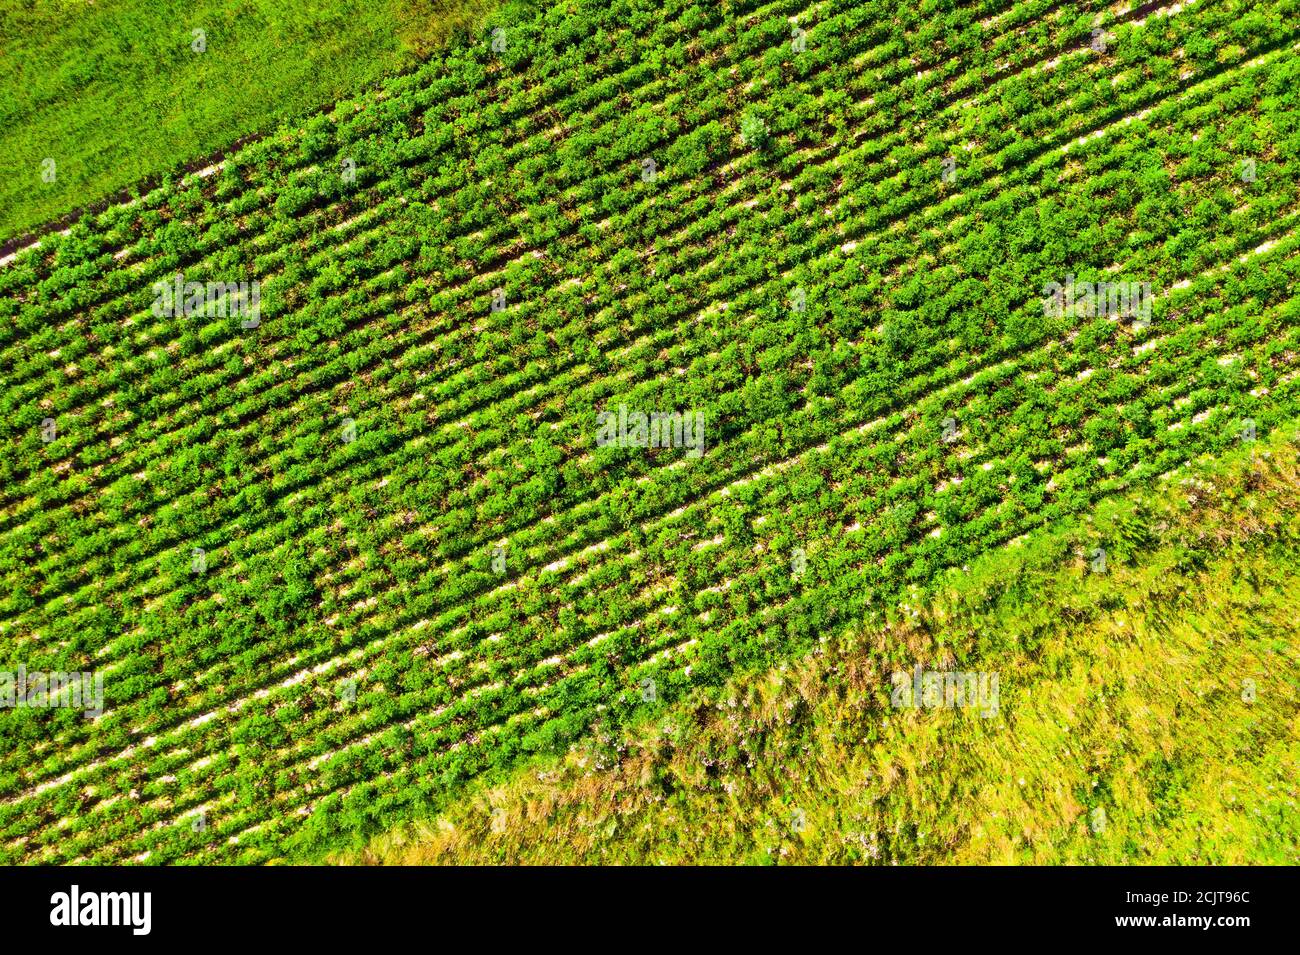 La texture des rangées de plantes agricoles de plantation vue de dessus Banque D'Images